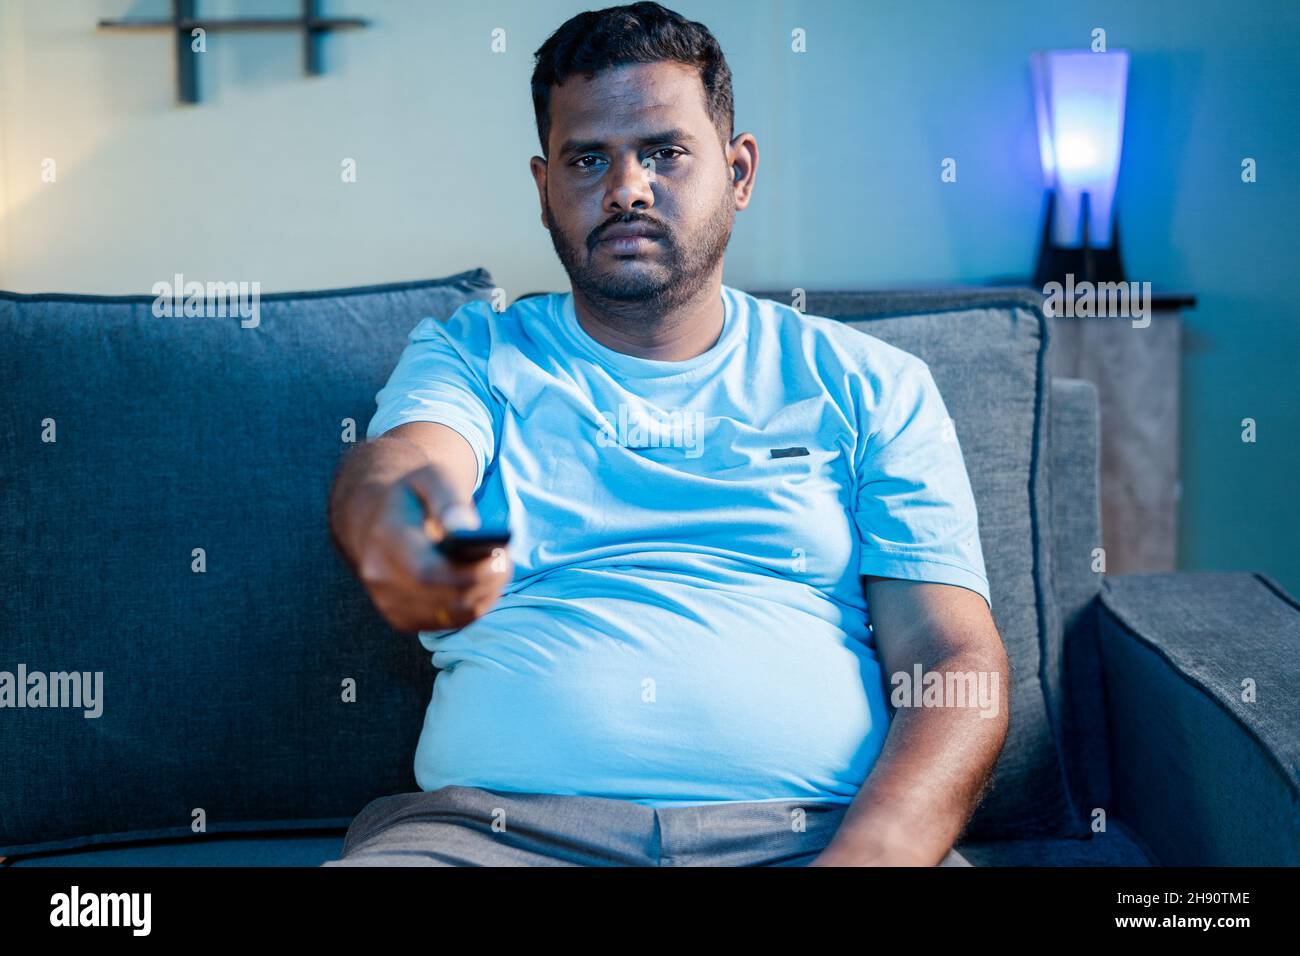 Obeso indio hombre gordo viendo la televisión durante el fin de semana en casa - concepto de aburrimiento, pereza y relajación o actividades de ocio. Foto de stock